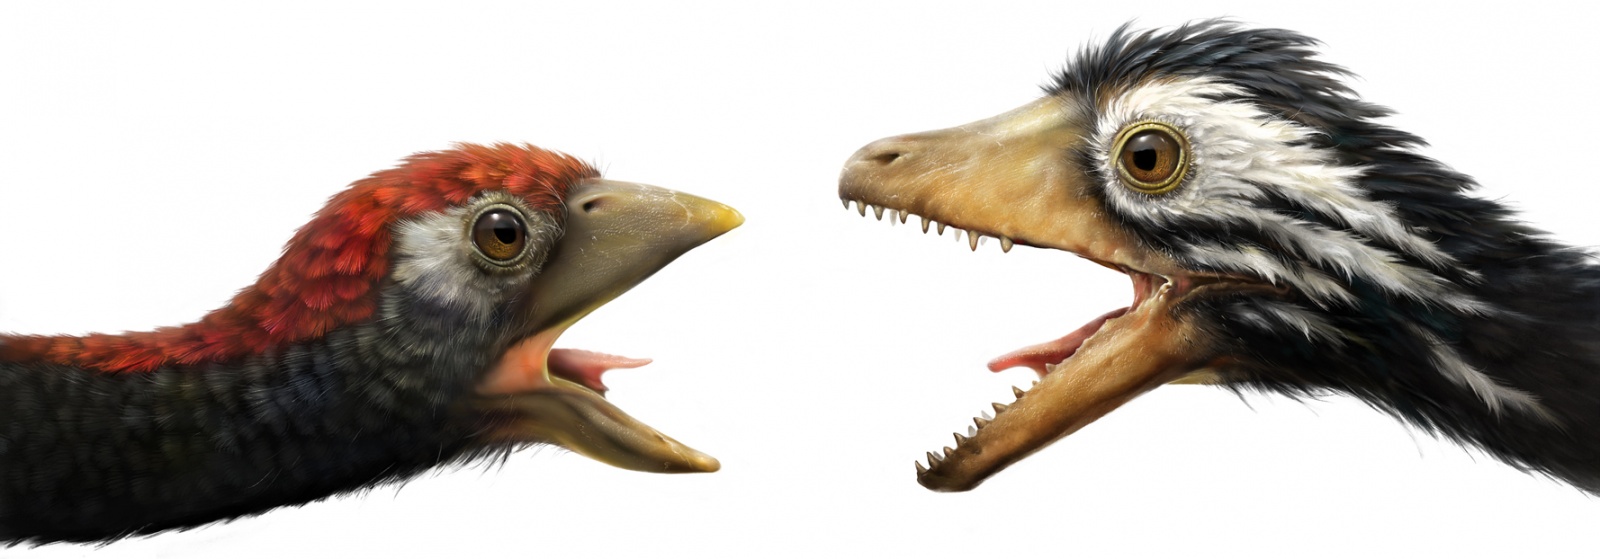 Сравнительная физиология динозавров и птиц. Популярно о малоизвестном. Часть 1 «Кости титанов» - 1